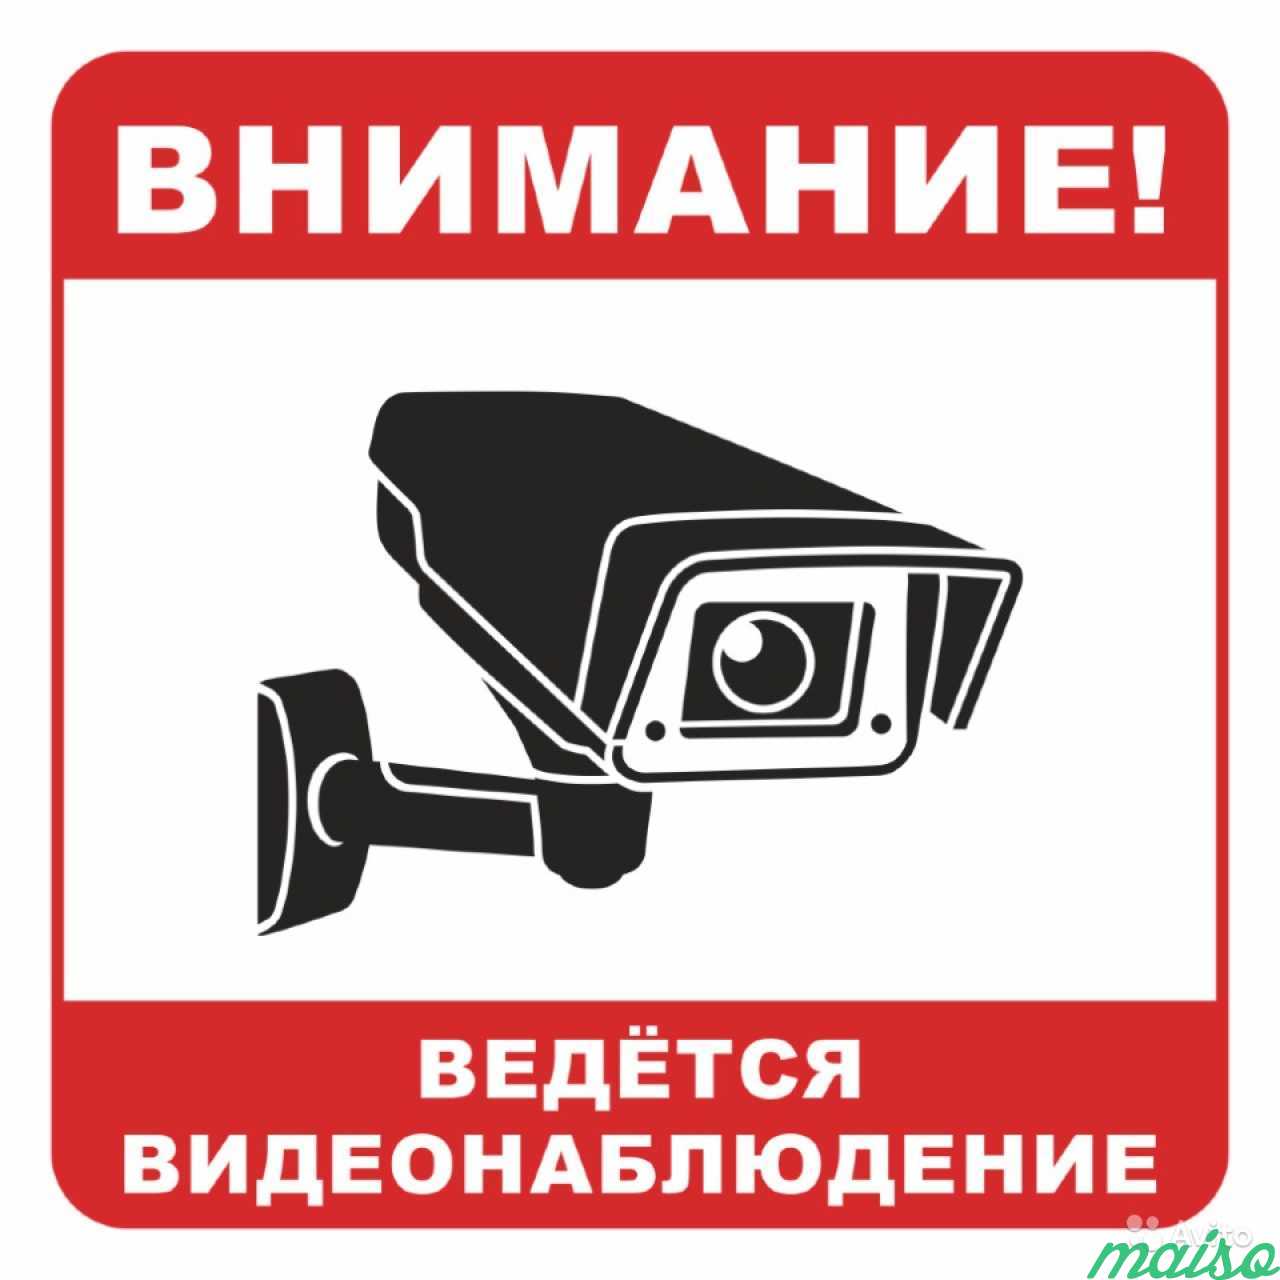 Монтаж систем видеонаблюдения в Санкт-Петербурге. Фото 1